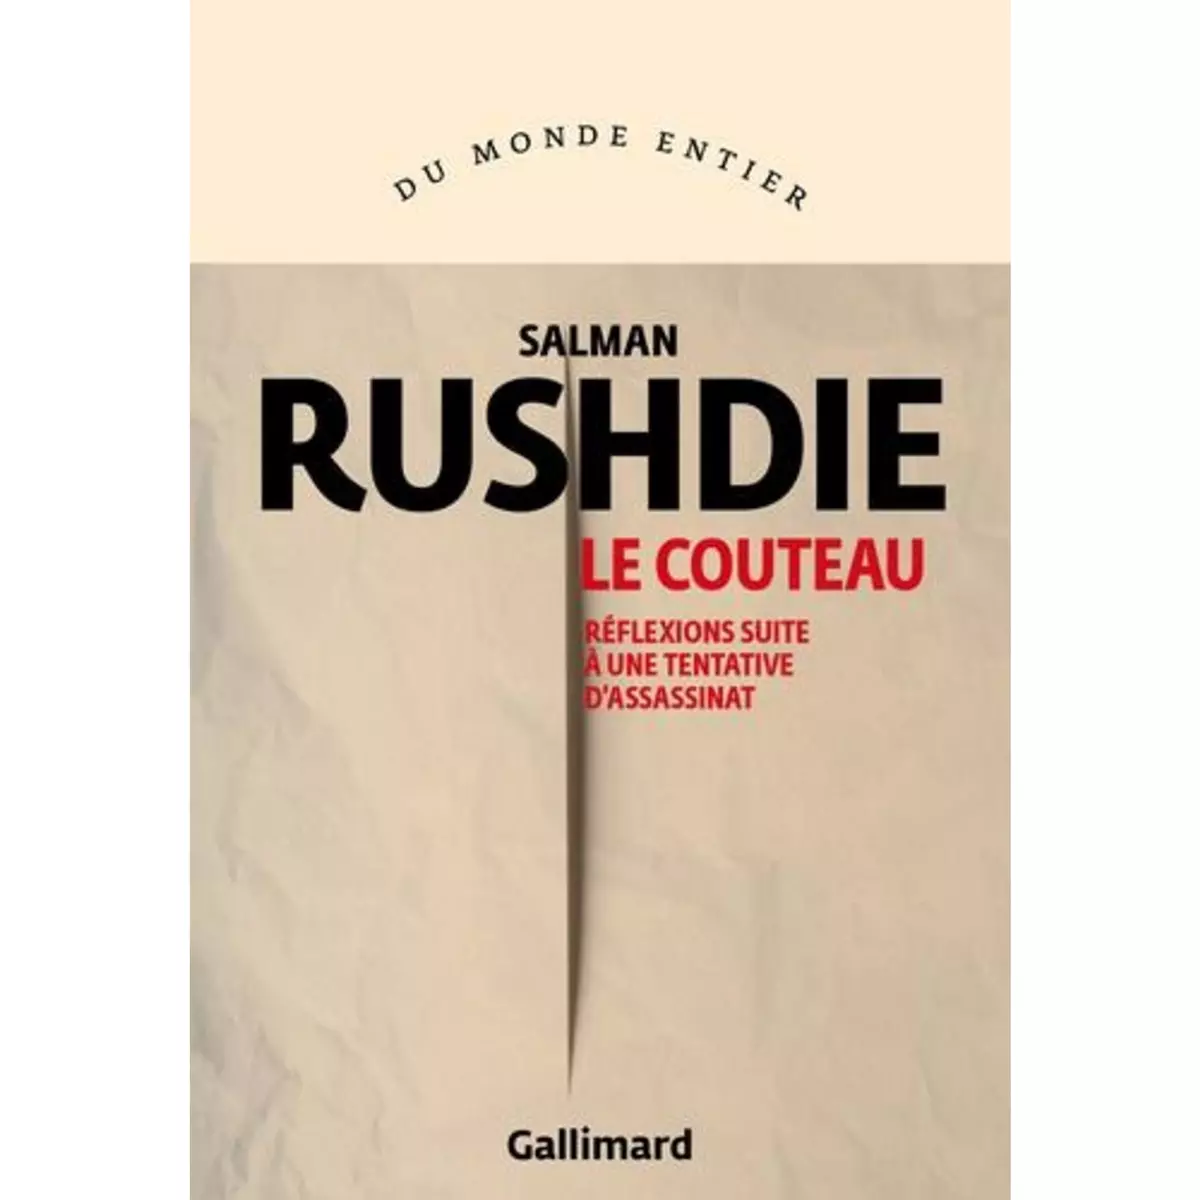  LE COUTEAU. REFLEXIONS SUITE A UNE TENTATIVE D'ASSASSINAT, Rushdie Salman